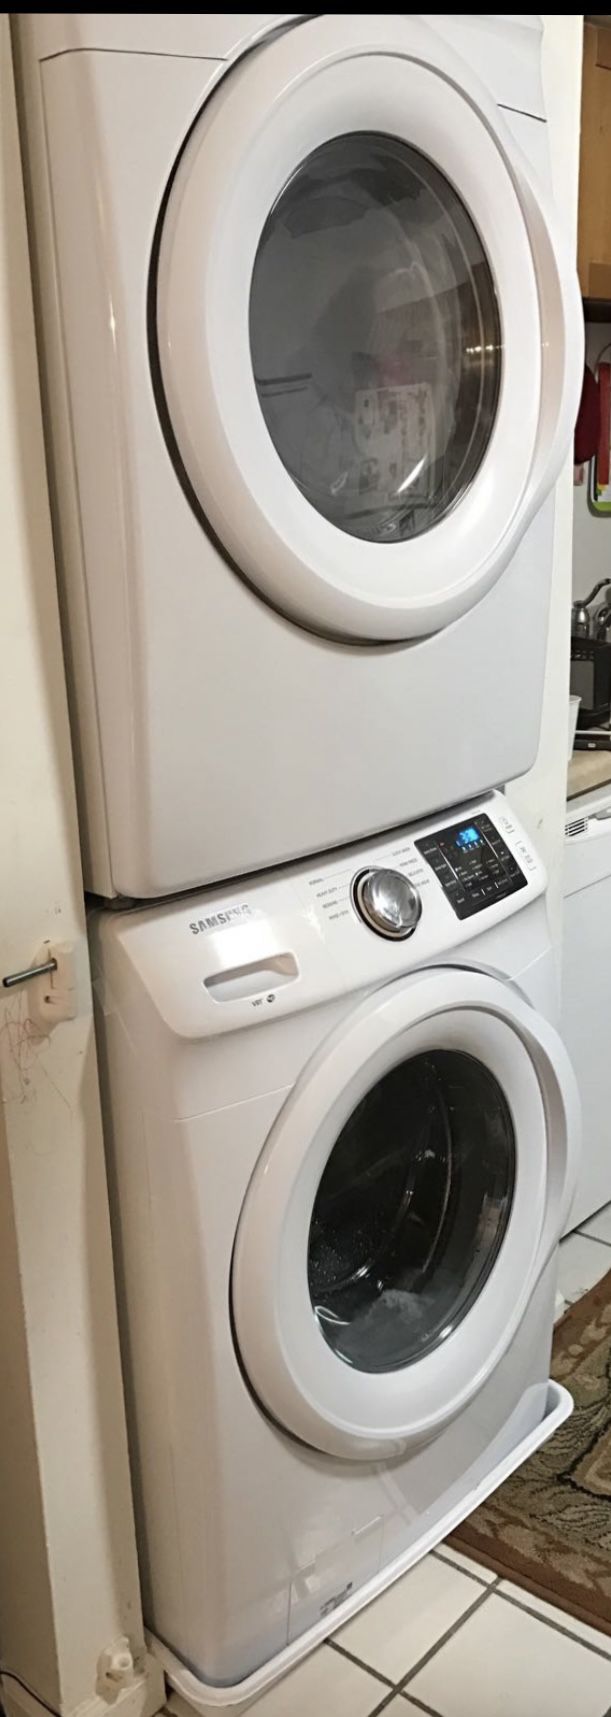 Samsung Washer Dryer 